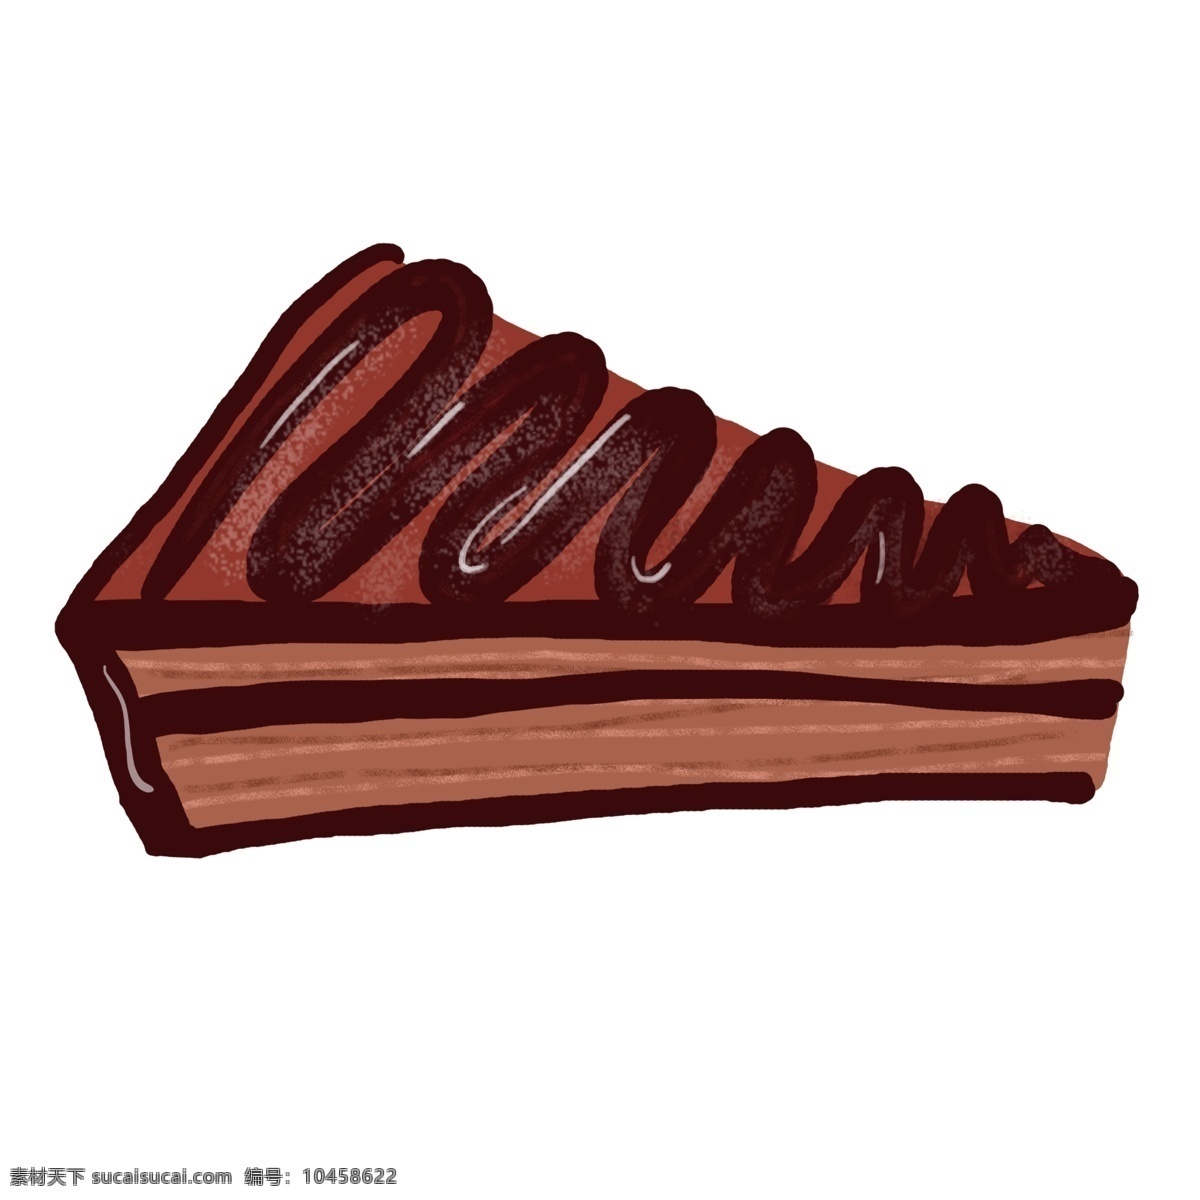 甜点 美食 巧克力 蛋糕 食品巧克力 慕斯 可可粉 零食 奶油 糕点 西点 下午茶 巧克力蛋糕